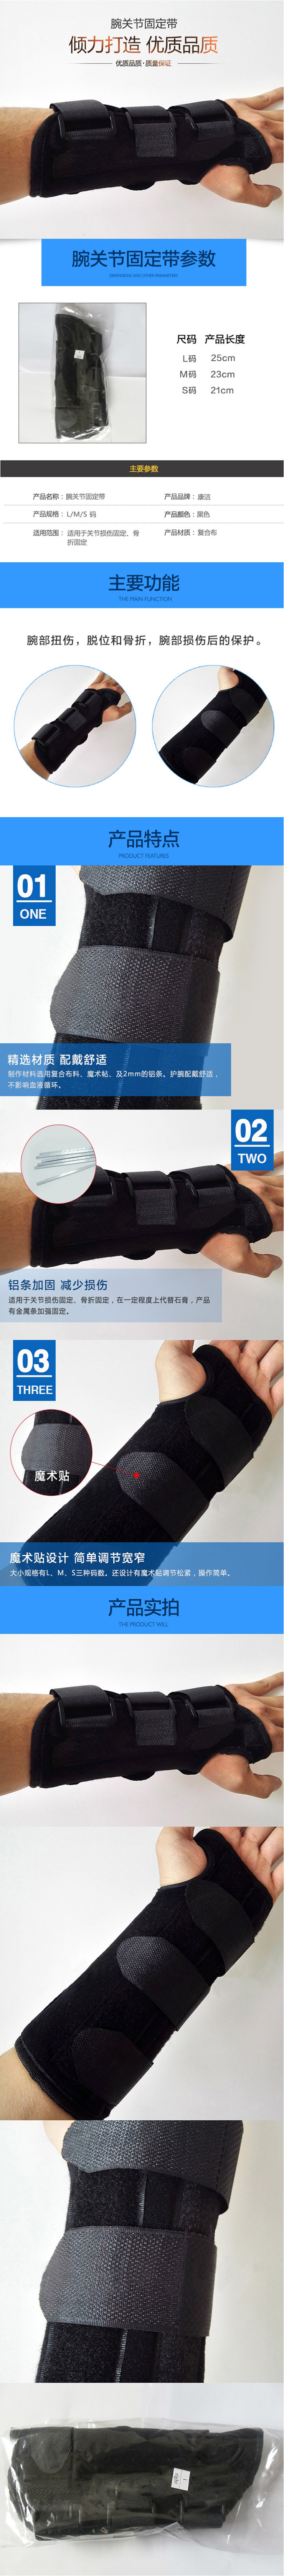 新款腕关节固定带腕部固定套支具手腕护具手腕骨折固定扭伤保护套-淘宝网.jpg